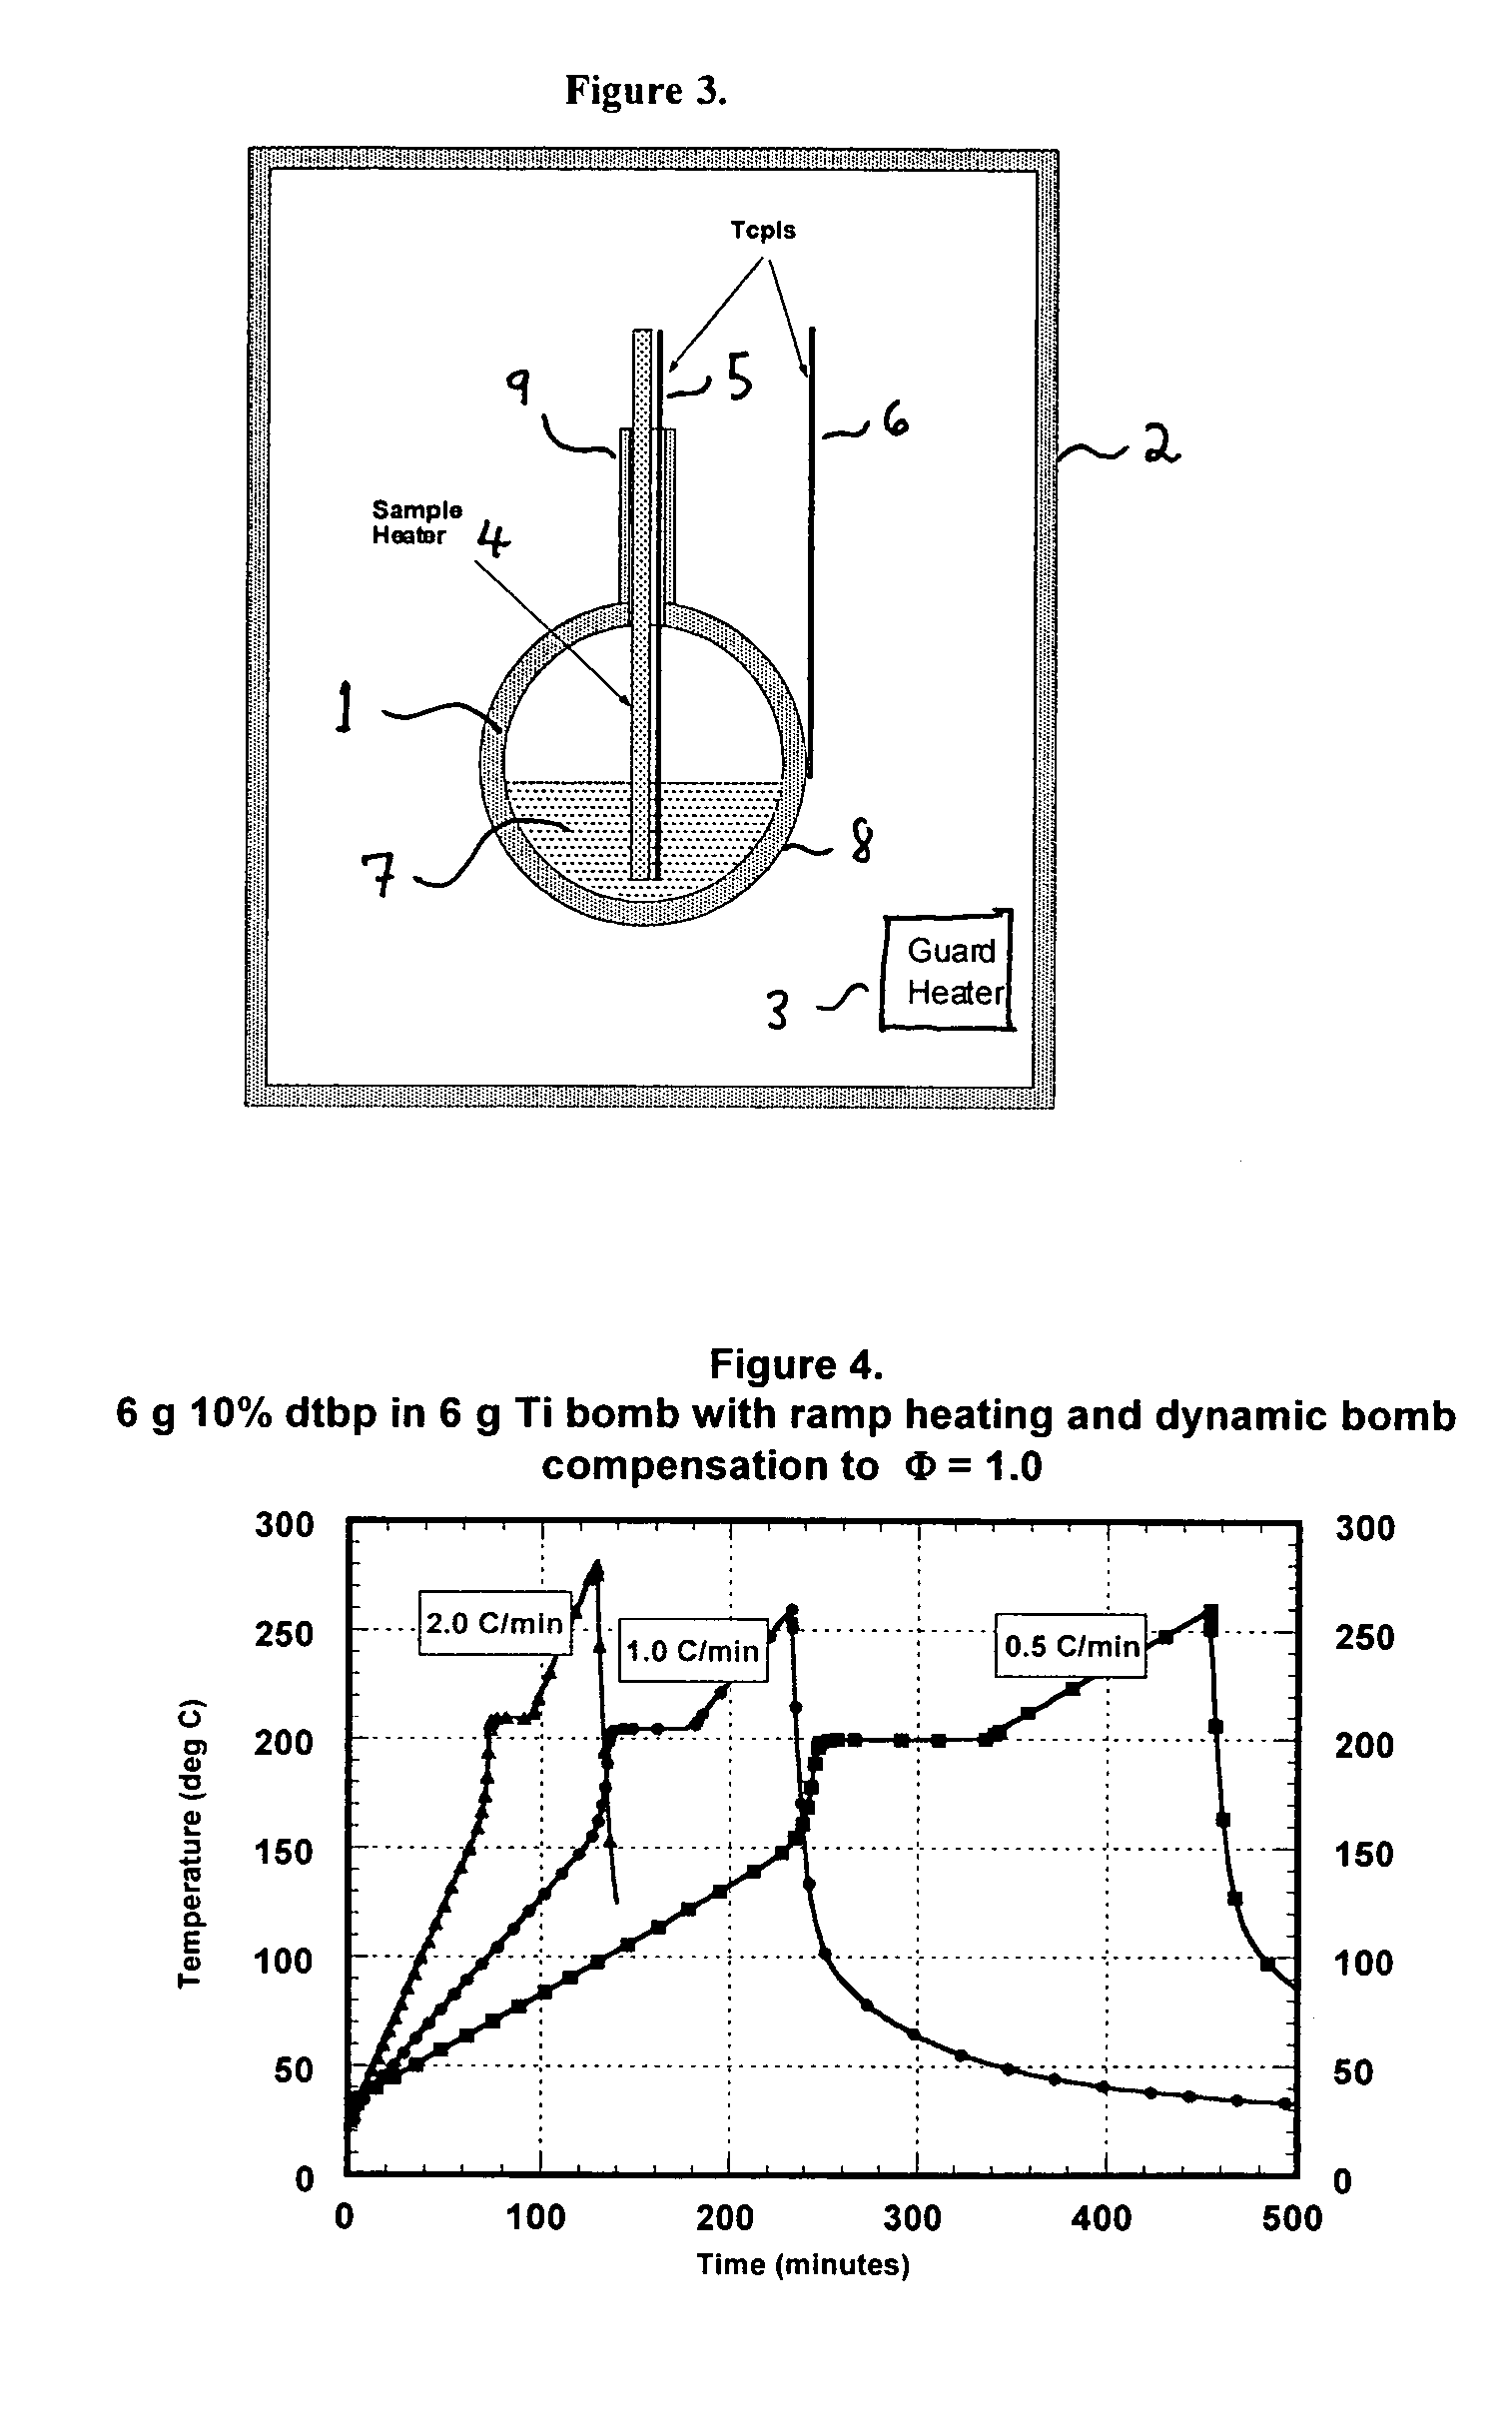 Low thermal inertia scanning adiabatic calorimeter